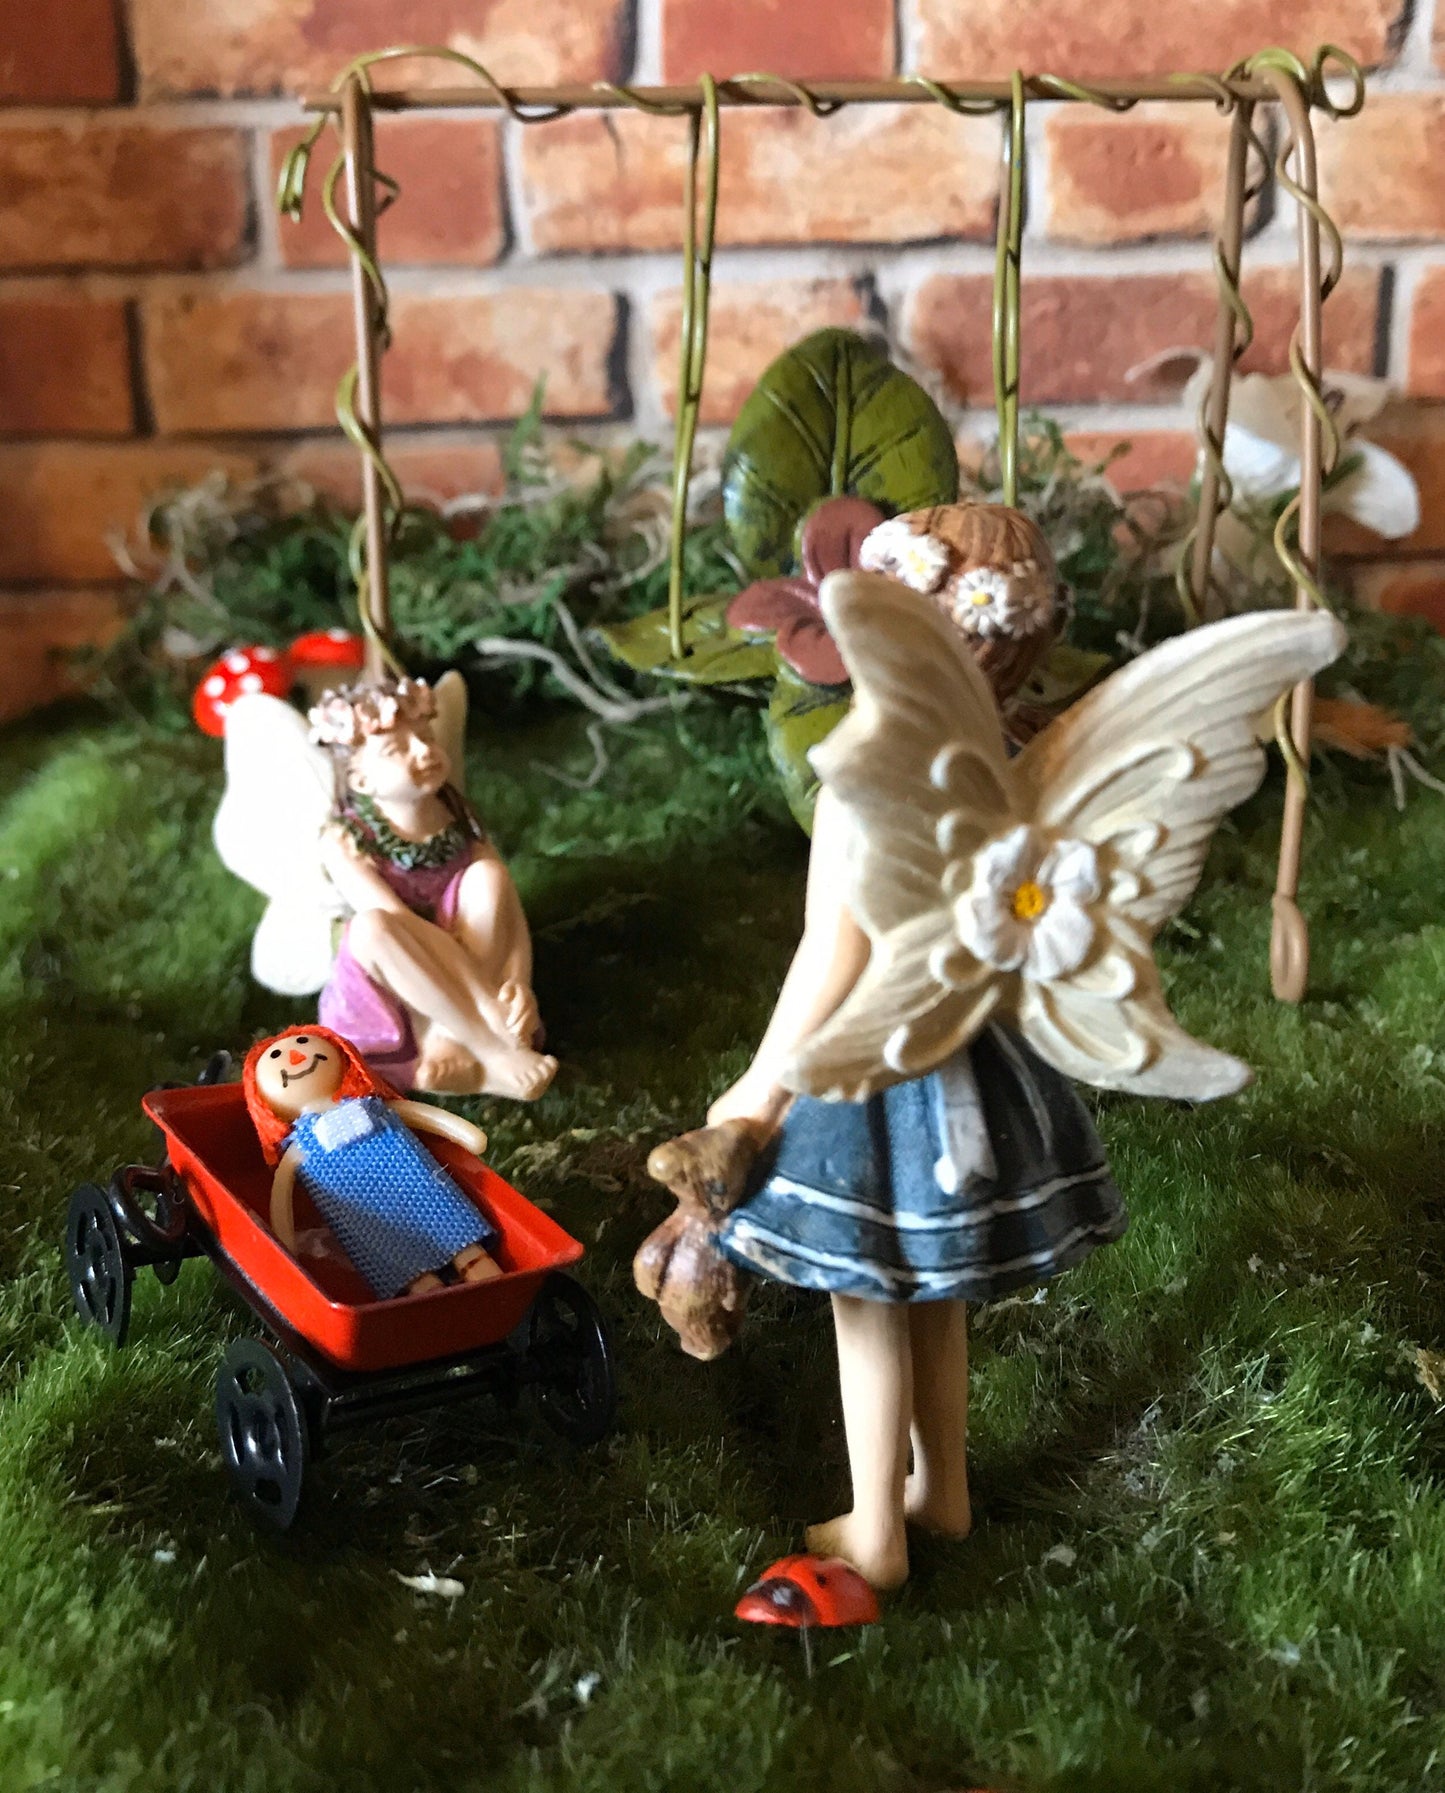 Sweet fairy girl with teddy bear toy